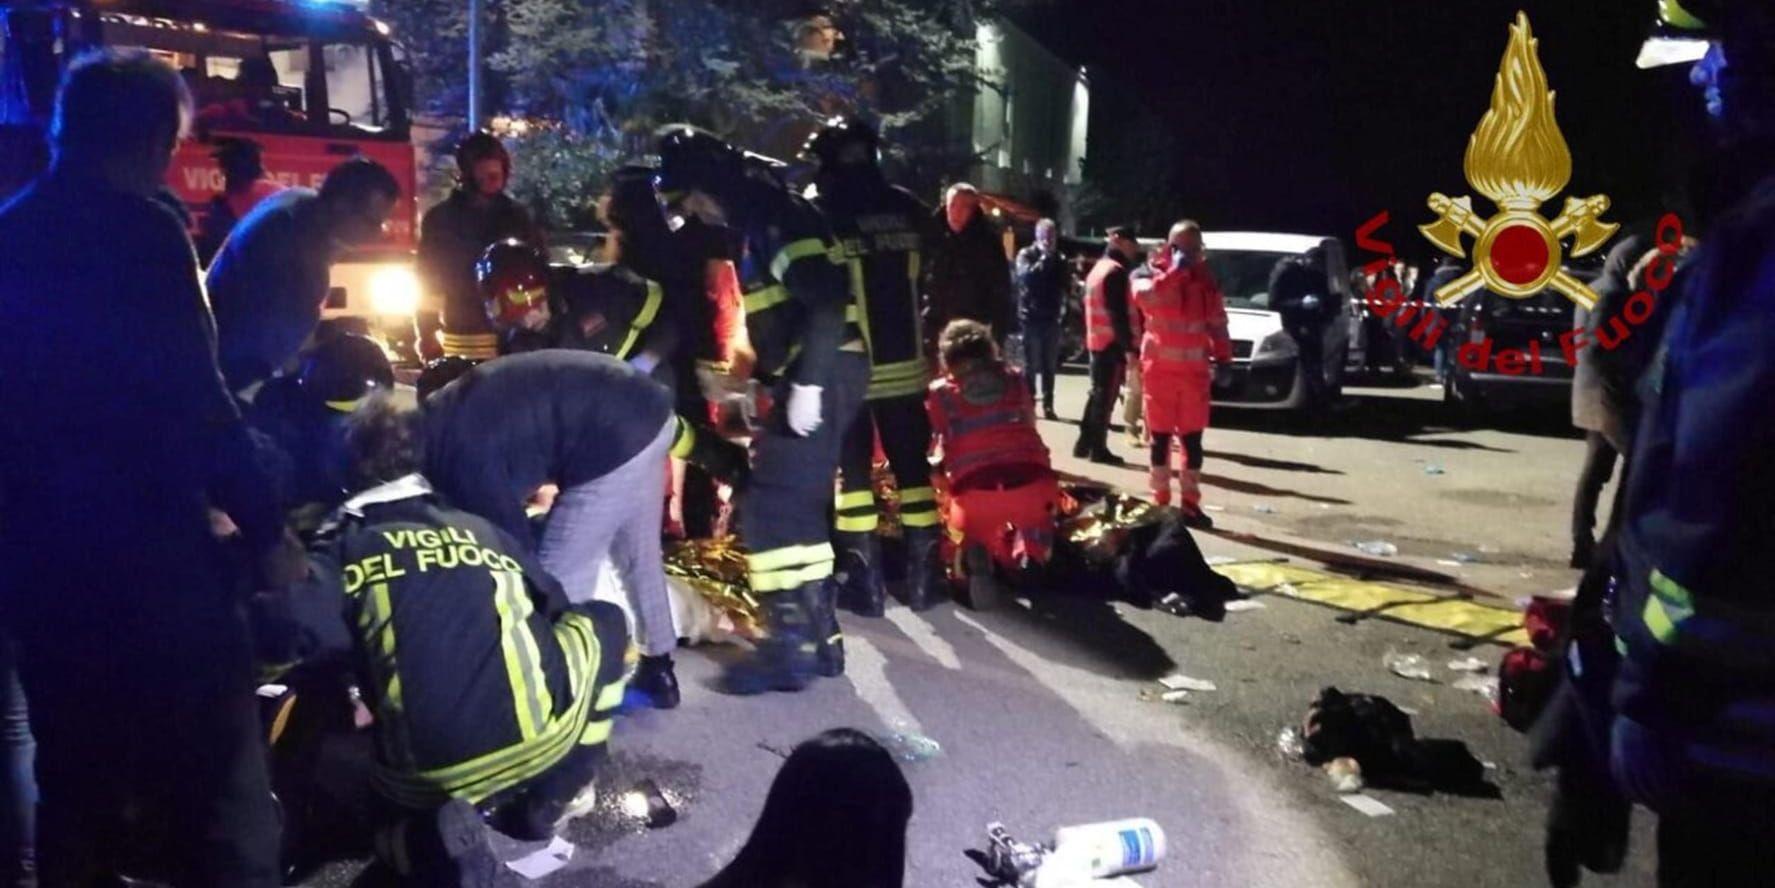 Räddningspersonal och offer utanför nattklubben natten till lördagen. Bild från brandkåren.